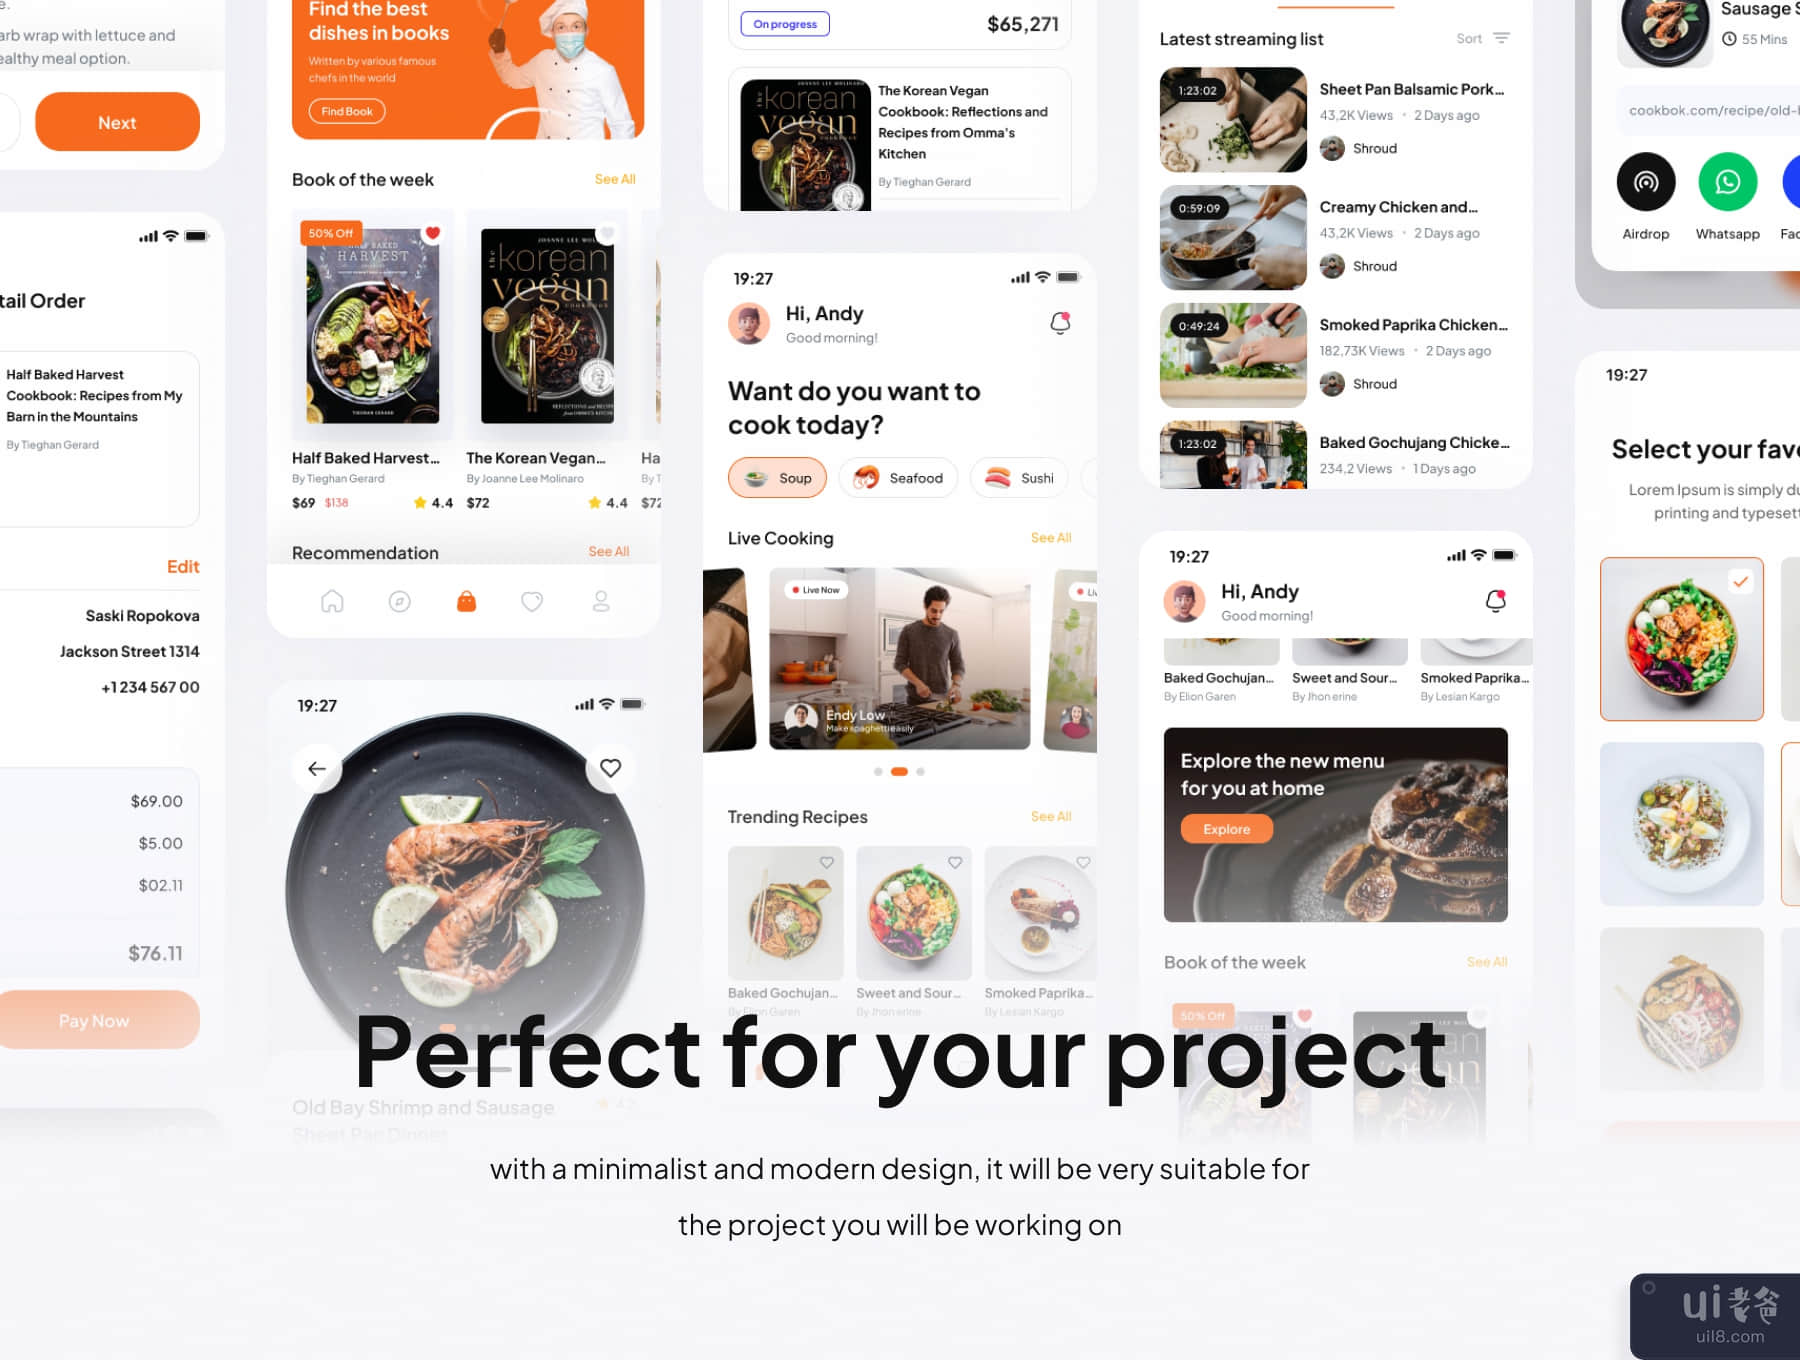 CookBok - 食谱和图书商店高级用户界面 KIts 应用程序 (CookBok - Recipe & Book Store Premium UI KIts App)插图1